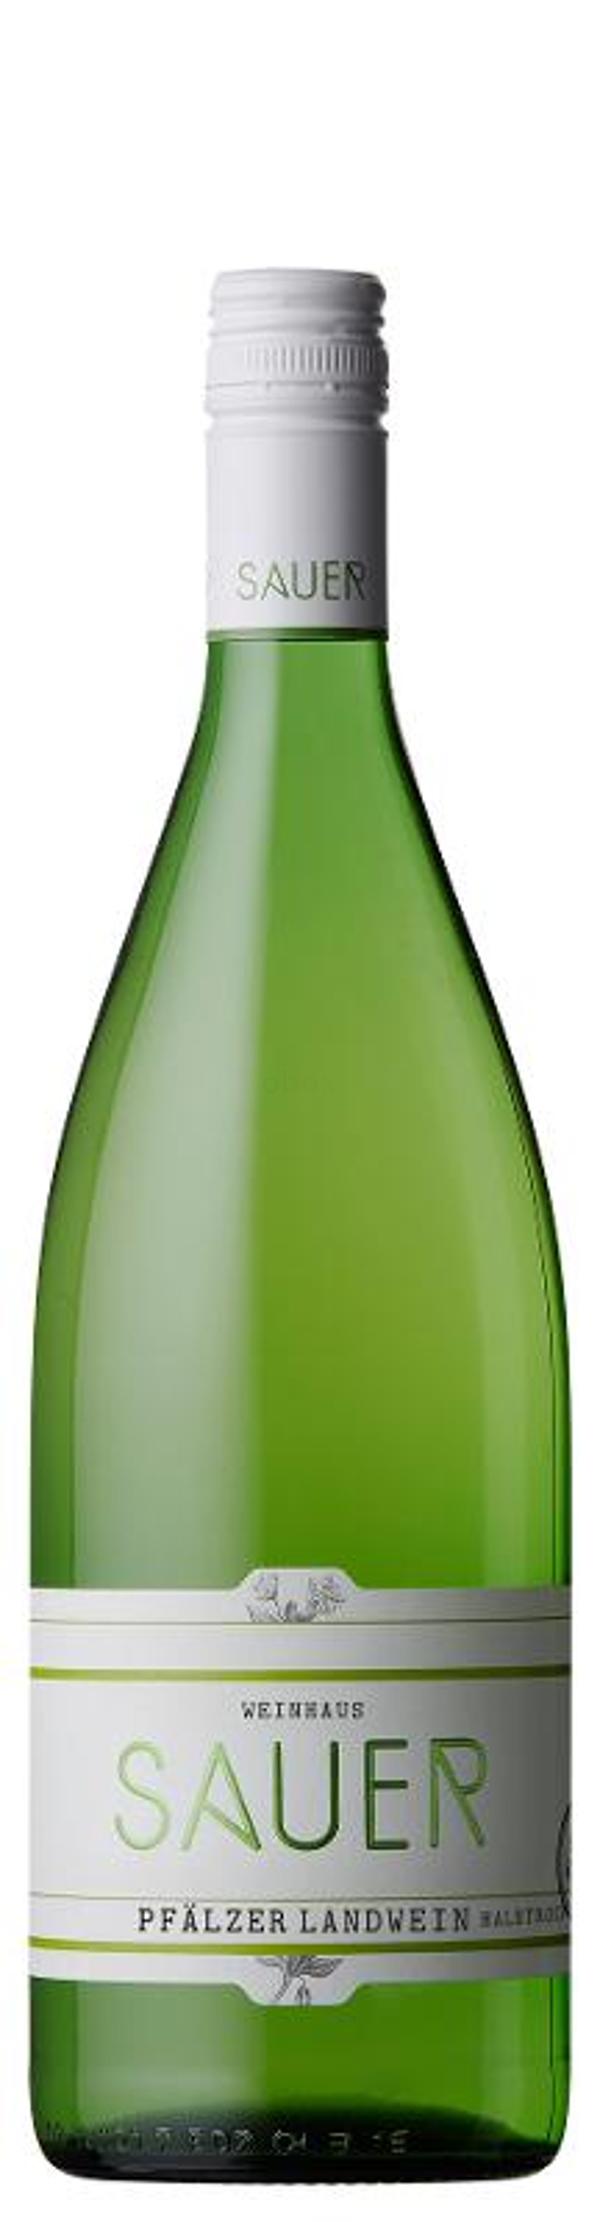 Produktfoto zu Pfälzer Landwein halbtrocken weiß, Weingut Sauer, 1L